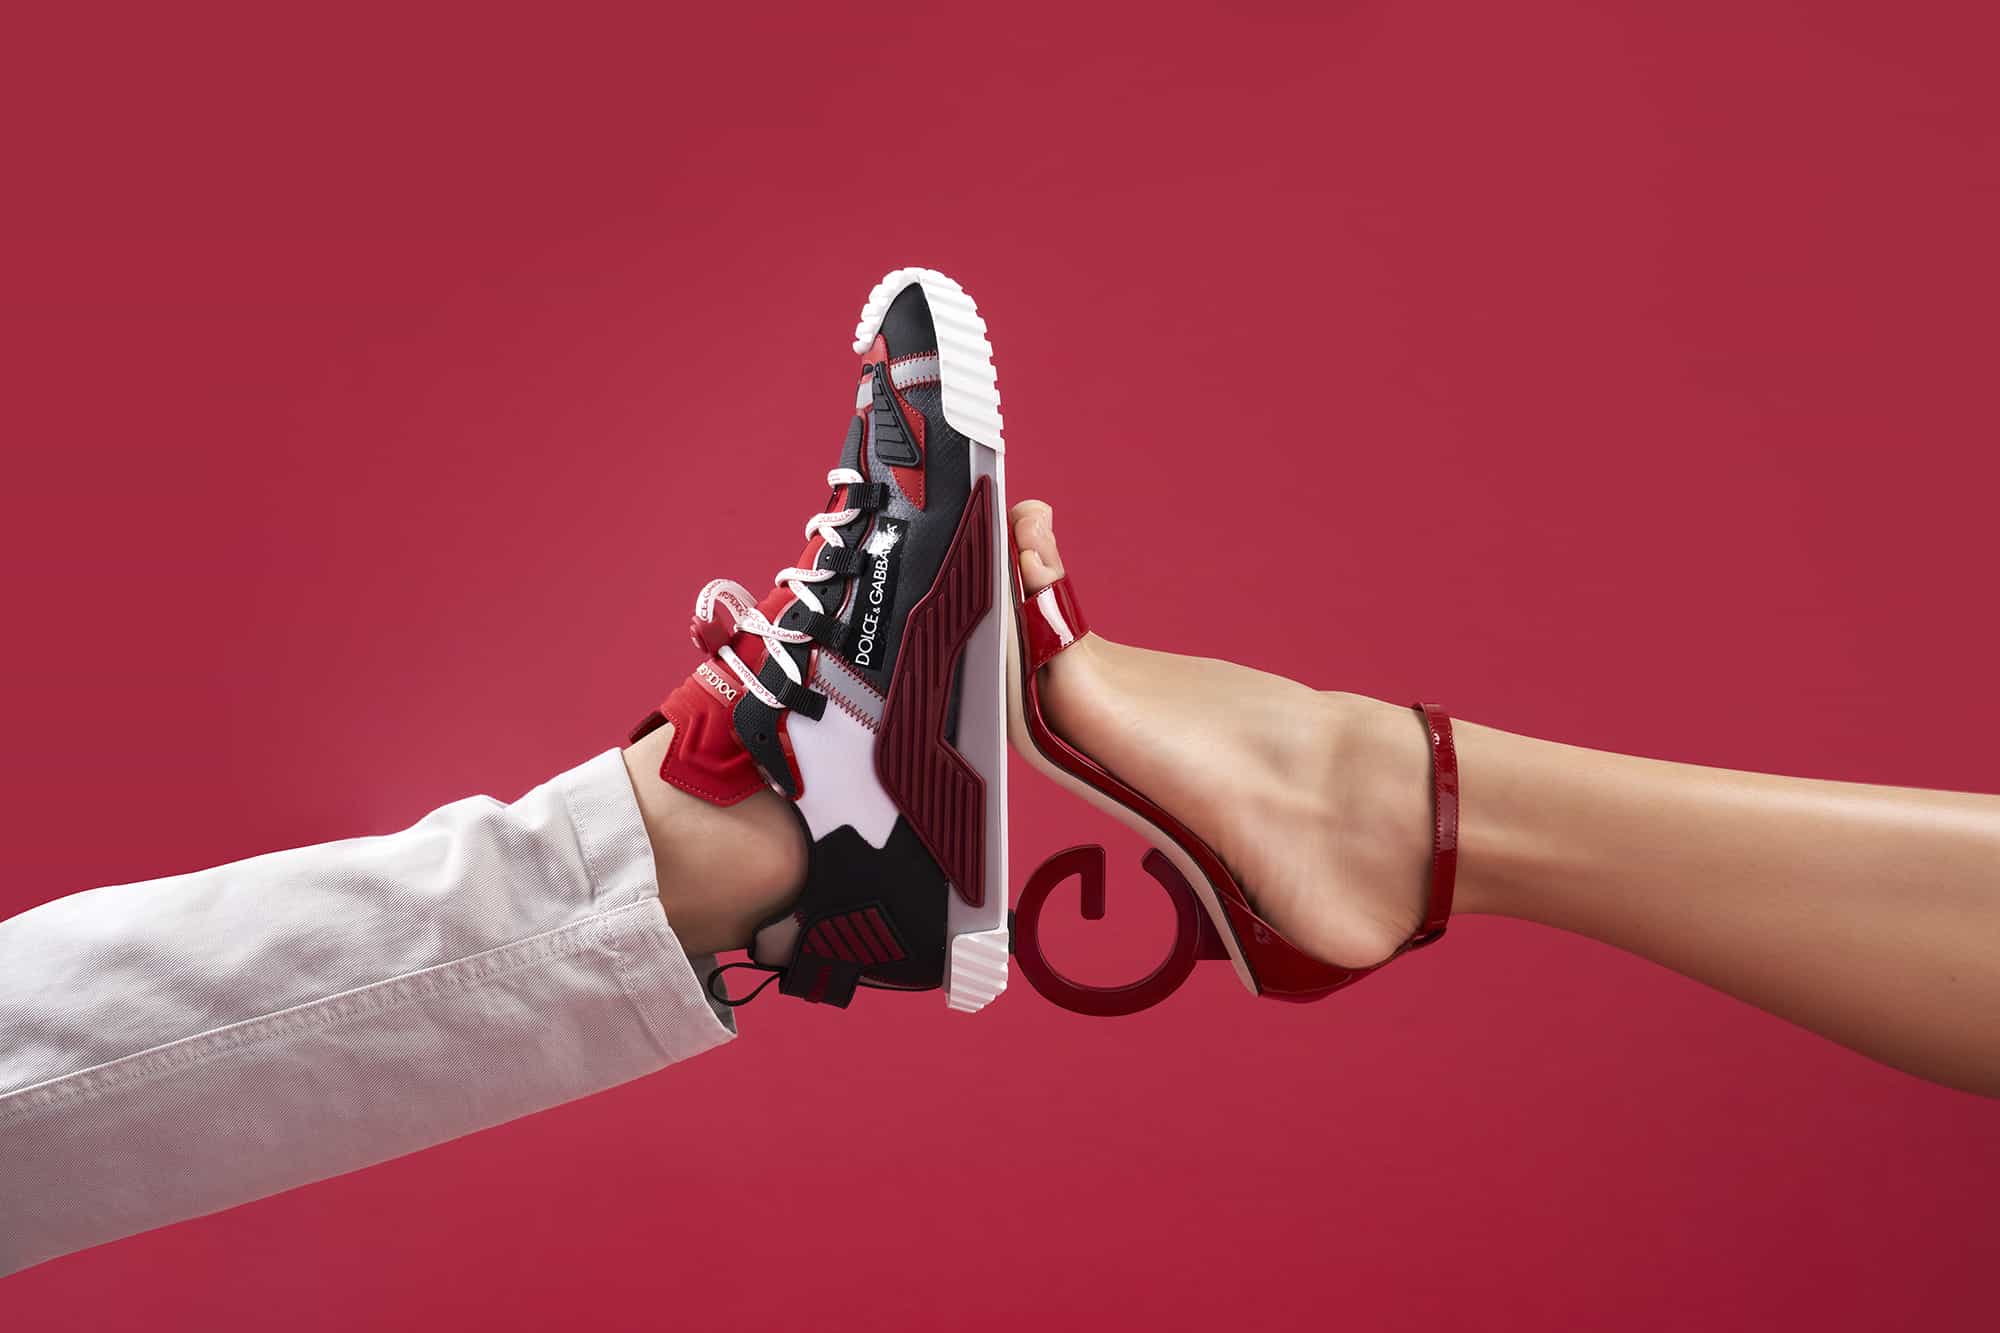 Најбоље идеје за поклон за Дан заљубљених у складу са ципелама на нивоу личности вашег партнера